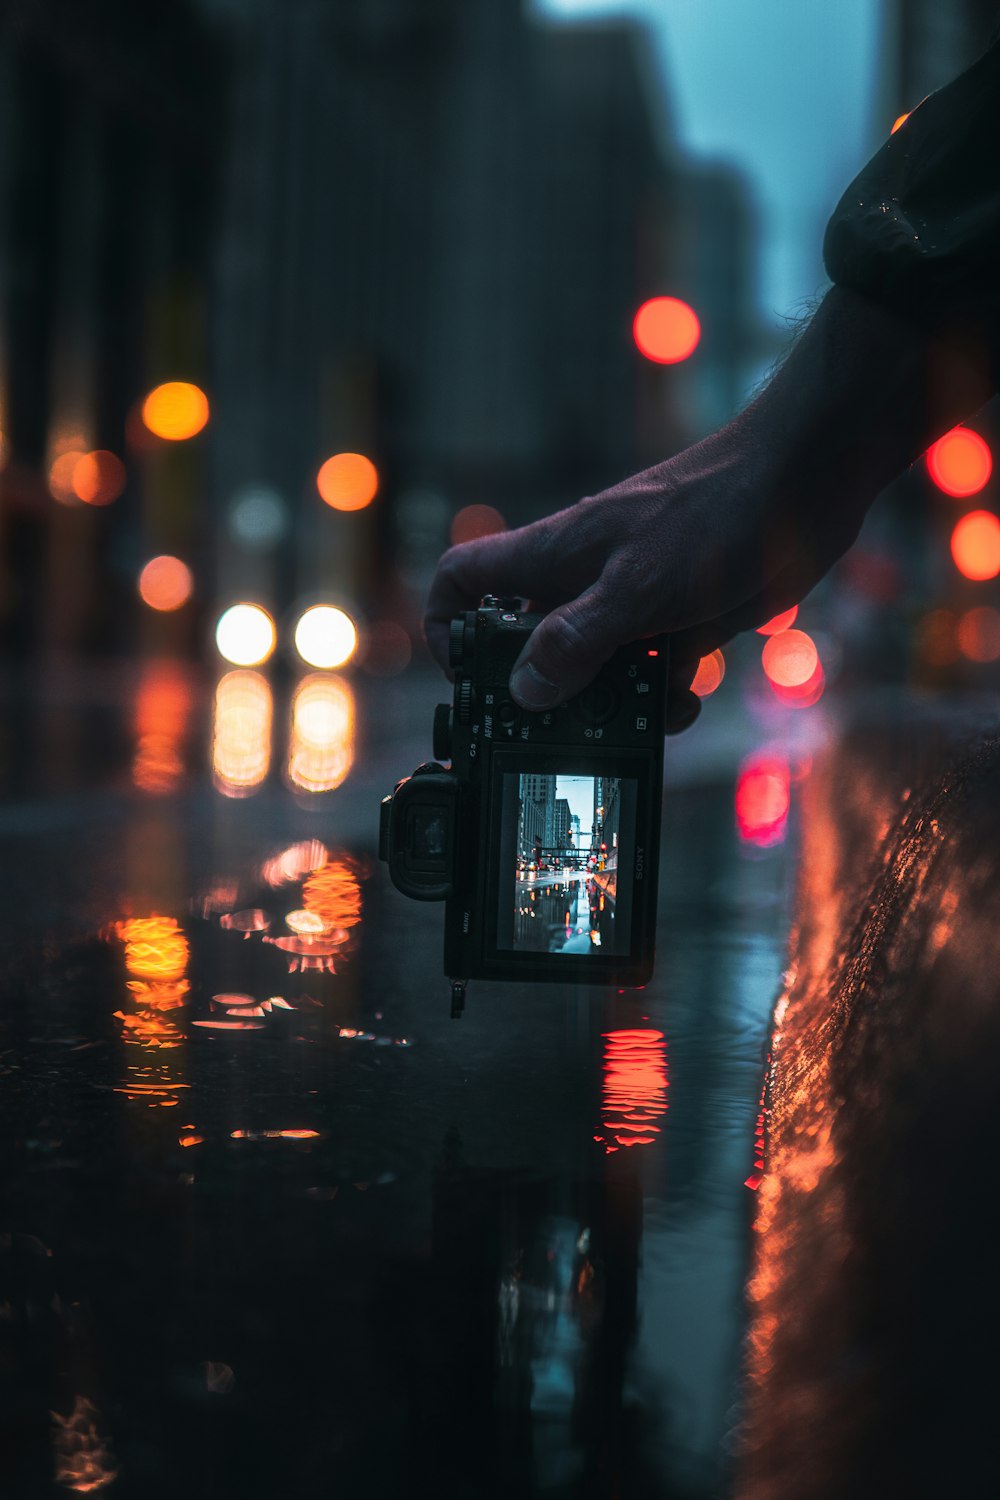 검은 DSLR 카메라를 들고 야간에 도시의 불빛 사진을 찍는 사람